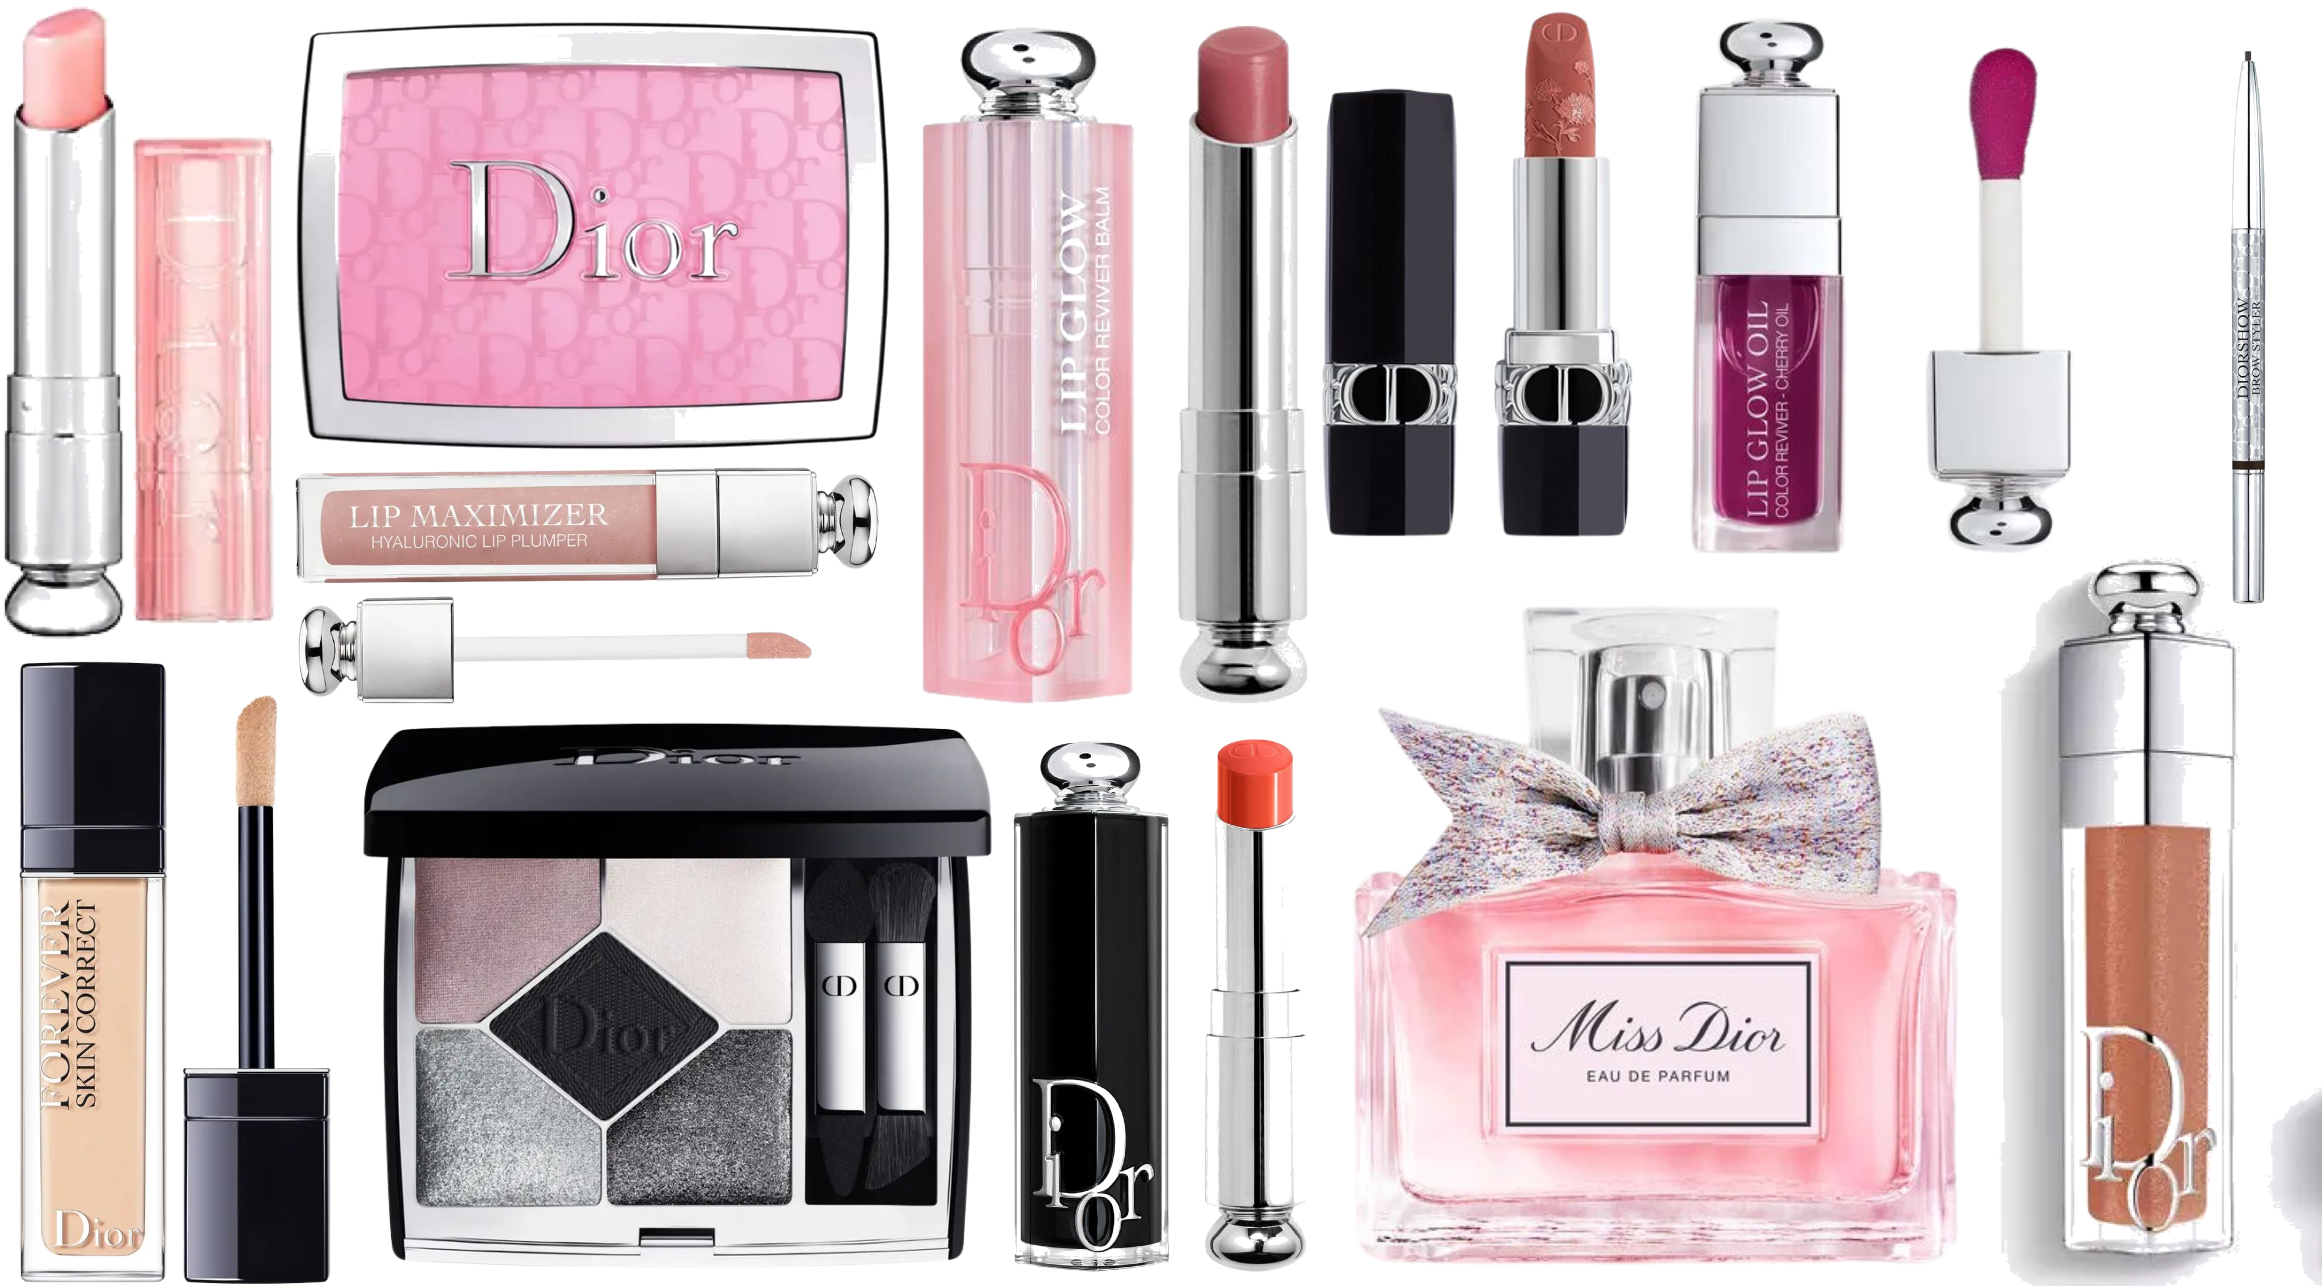 DIOR Addict Lipstick Case - Millefiori Couture Limited Edition - Macy's